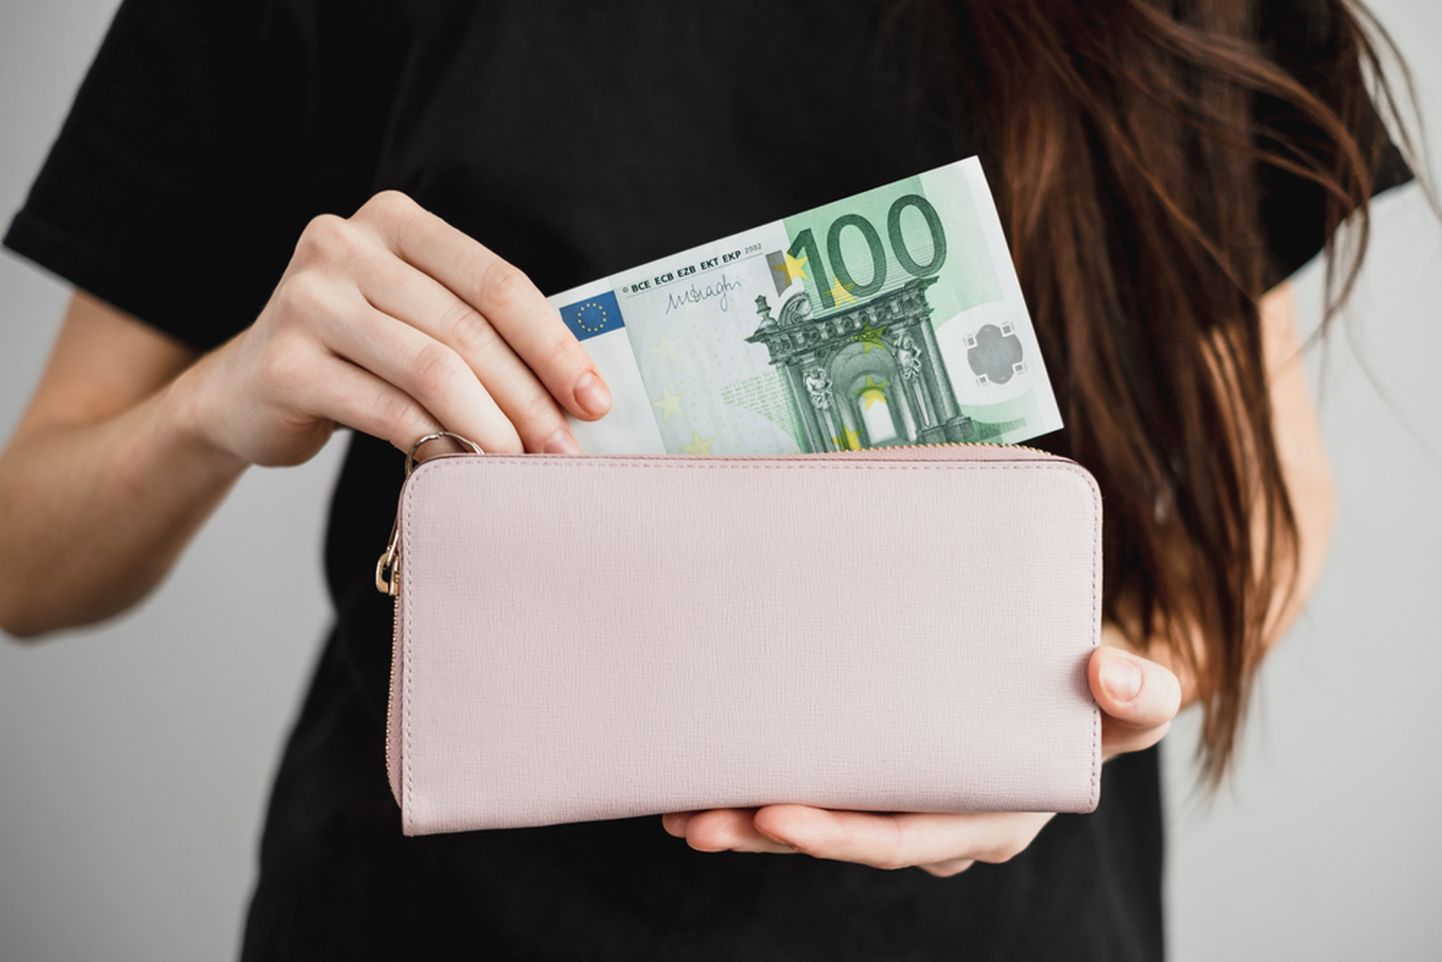 62 protsenti Eesti naistest hoiab oma finantse kahes või enamas pangas, kuna peab seda praktilisemaks.